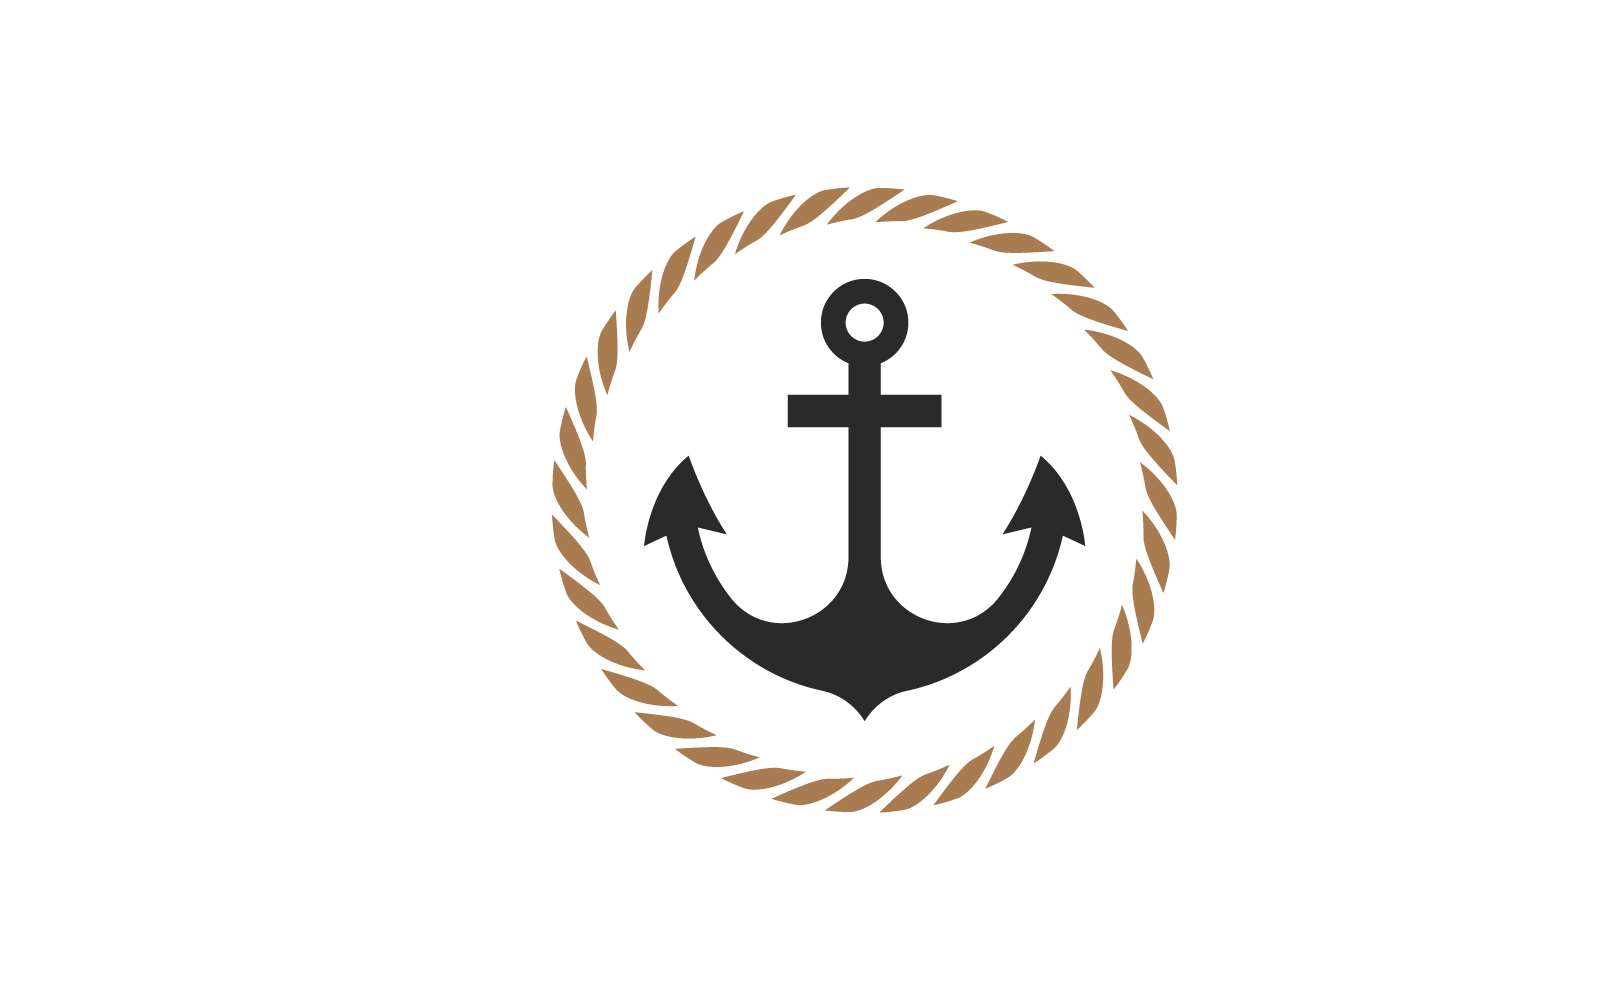 Anchor design logo vector illustration template